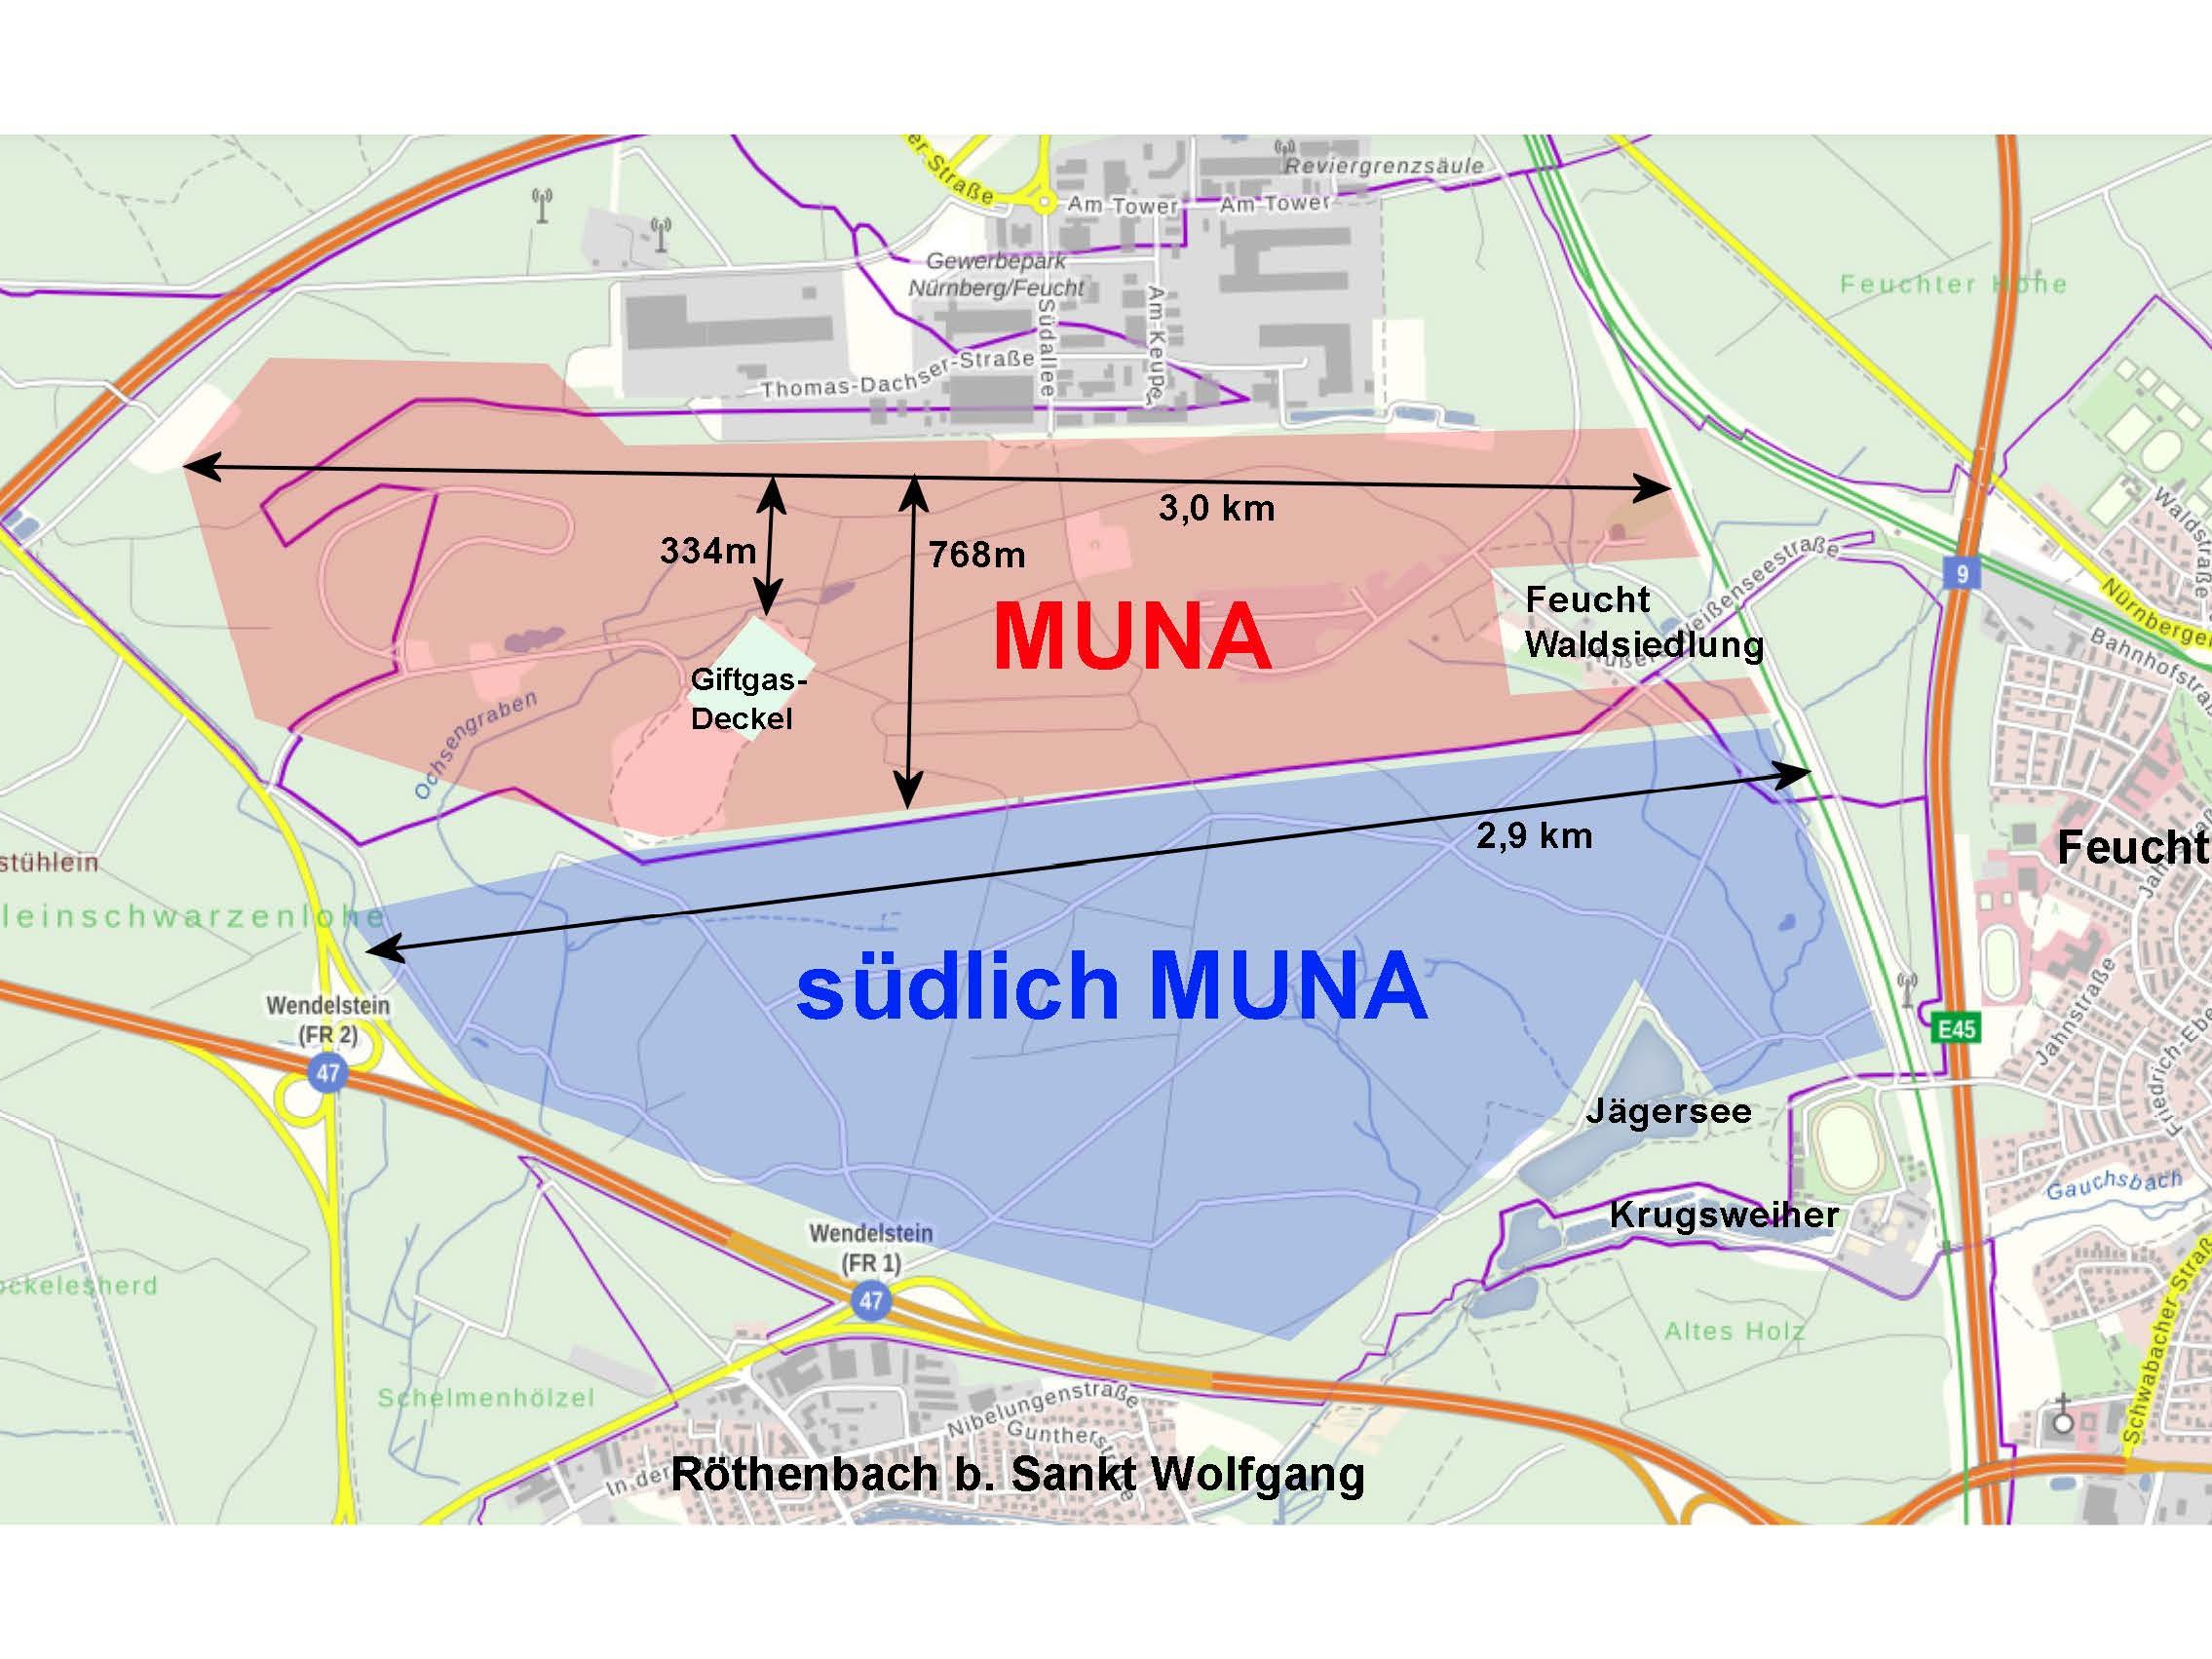 Ortsplan mit Gebietseinzeichnung Muna und südlicher der Muna